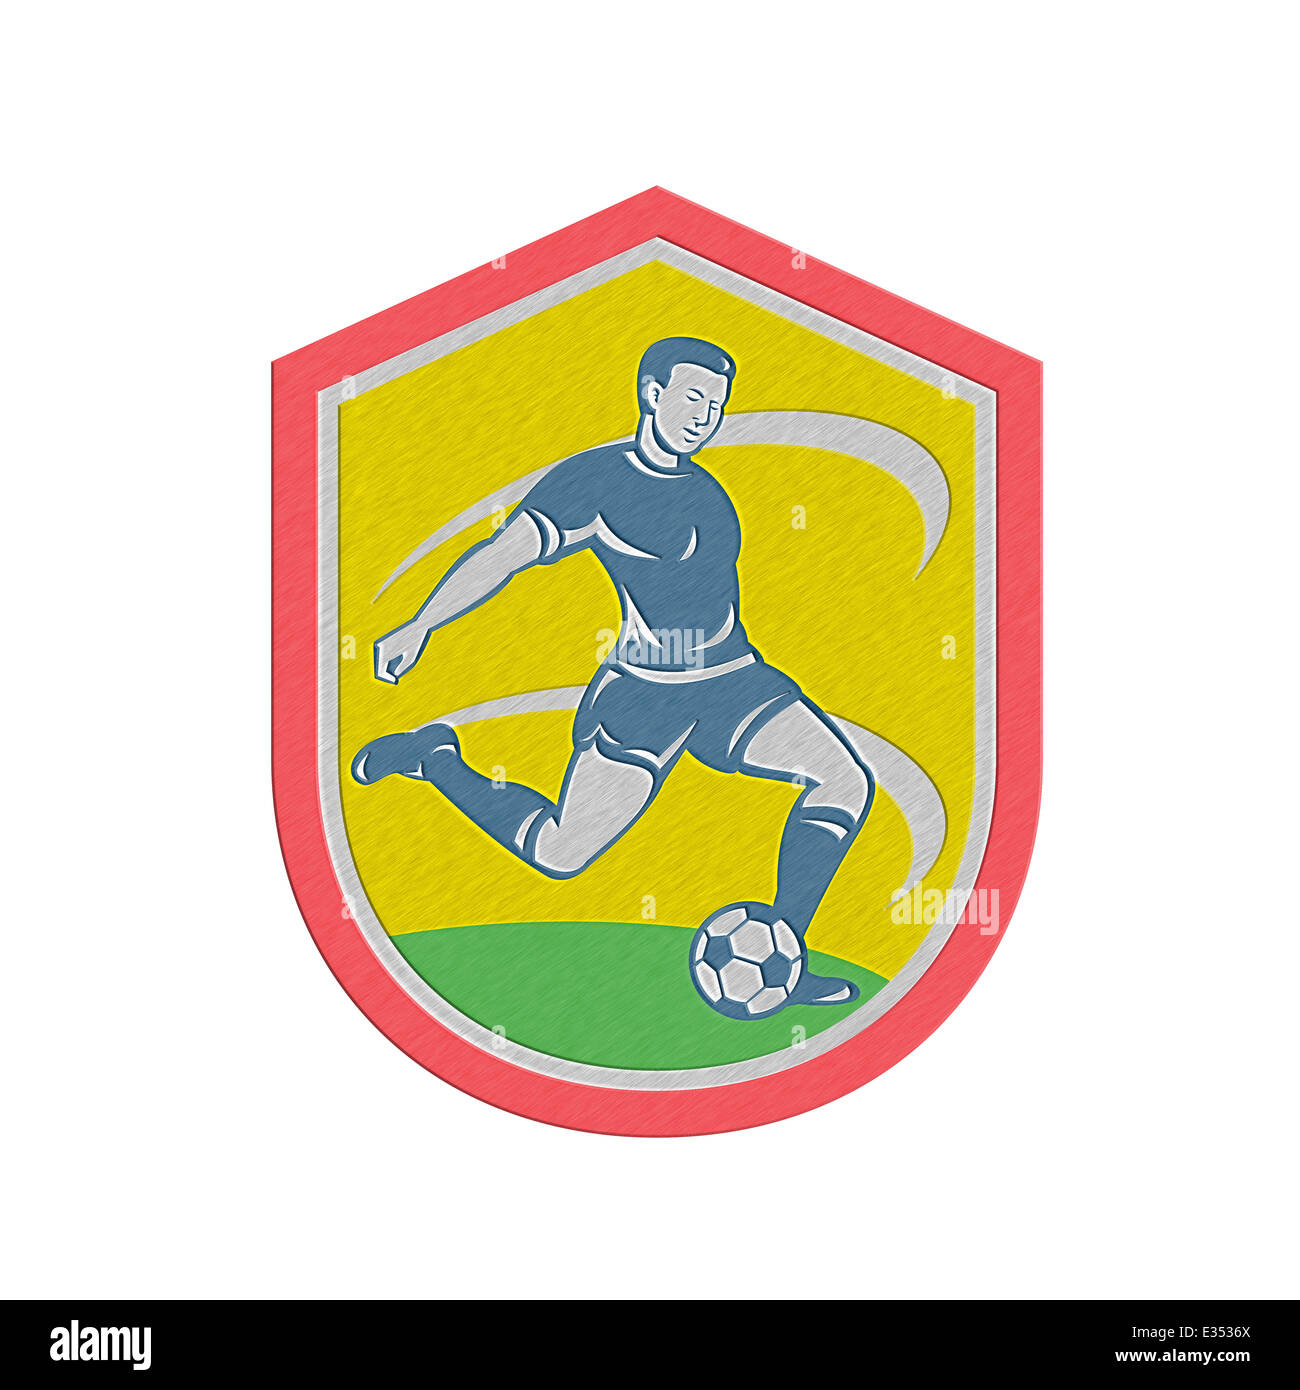 In stile metallico illustrazione di un calcio giocatore calci palla calcio insieme all'interno della protezione crest fatto in stile retrò. Foto Stock